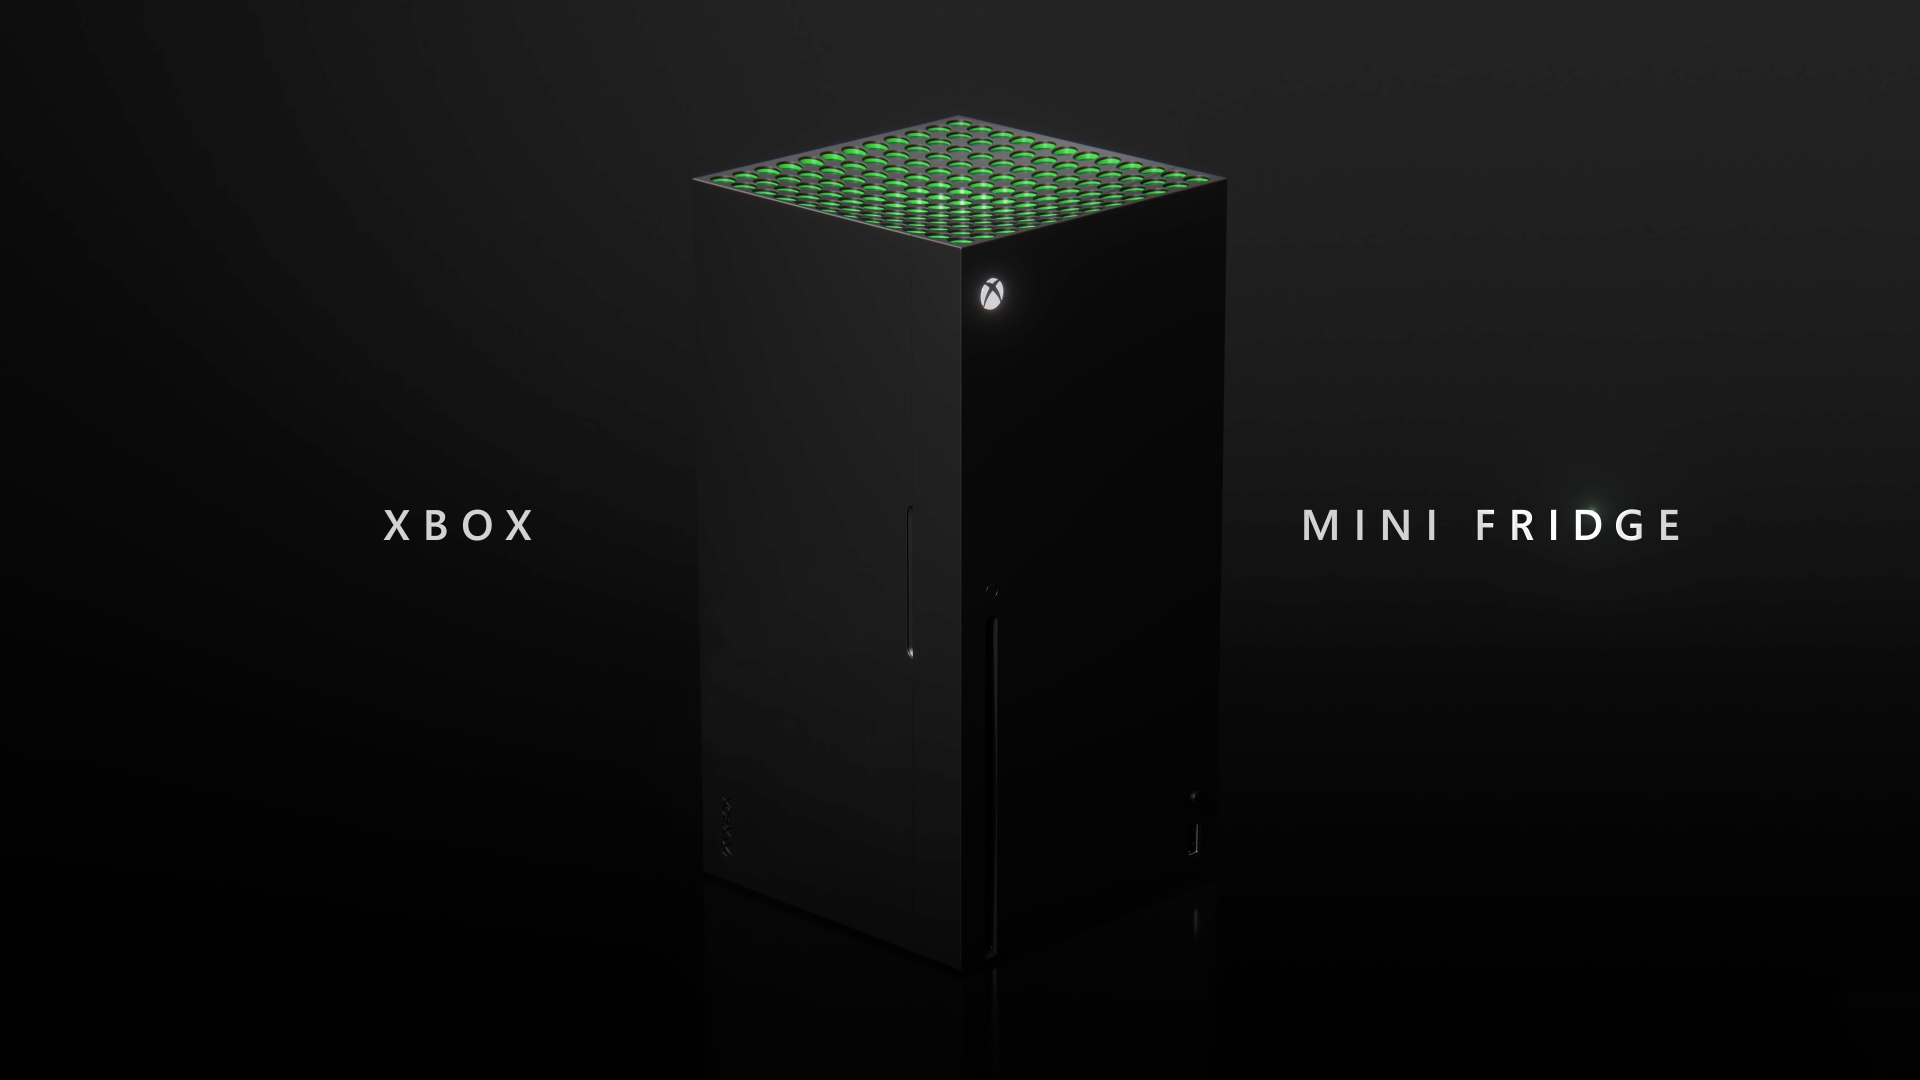 Microsoft zaprezentował kompaktową lodówkę Xbox Mini Fridge w formie markowej konsoli